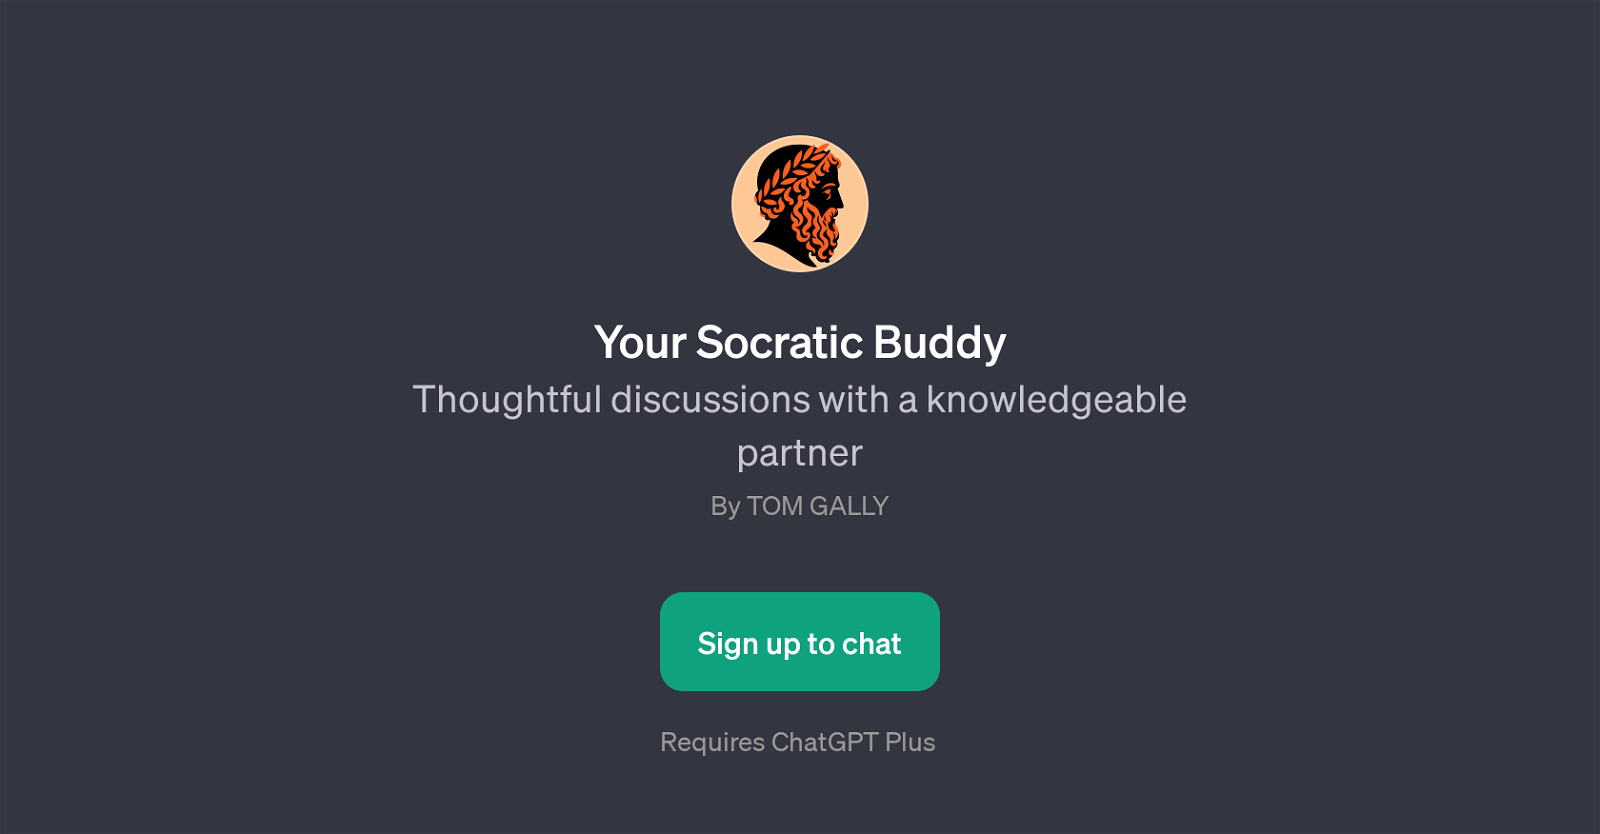 Your Socratic Buddy website